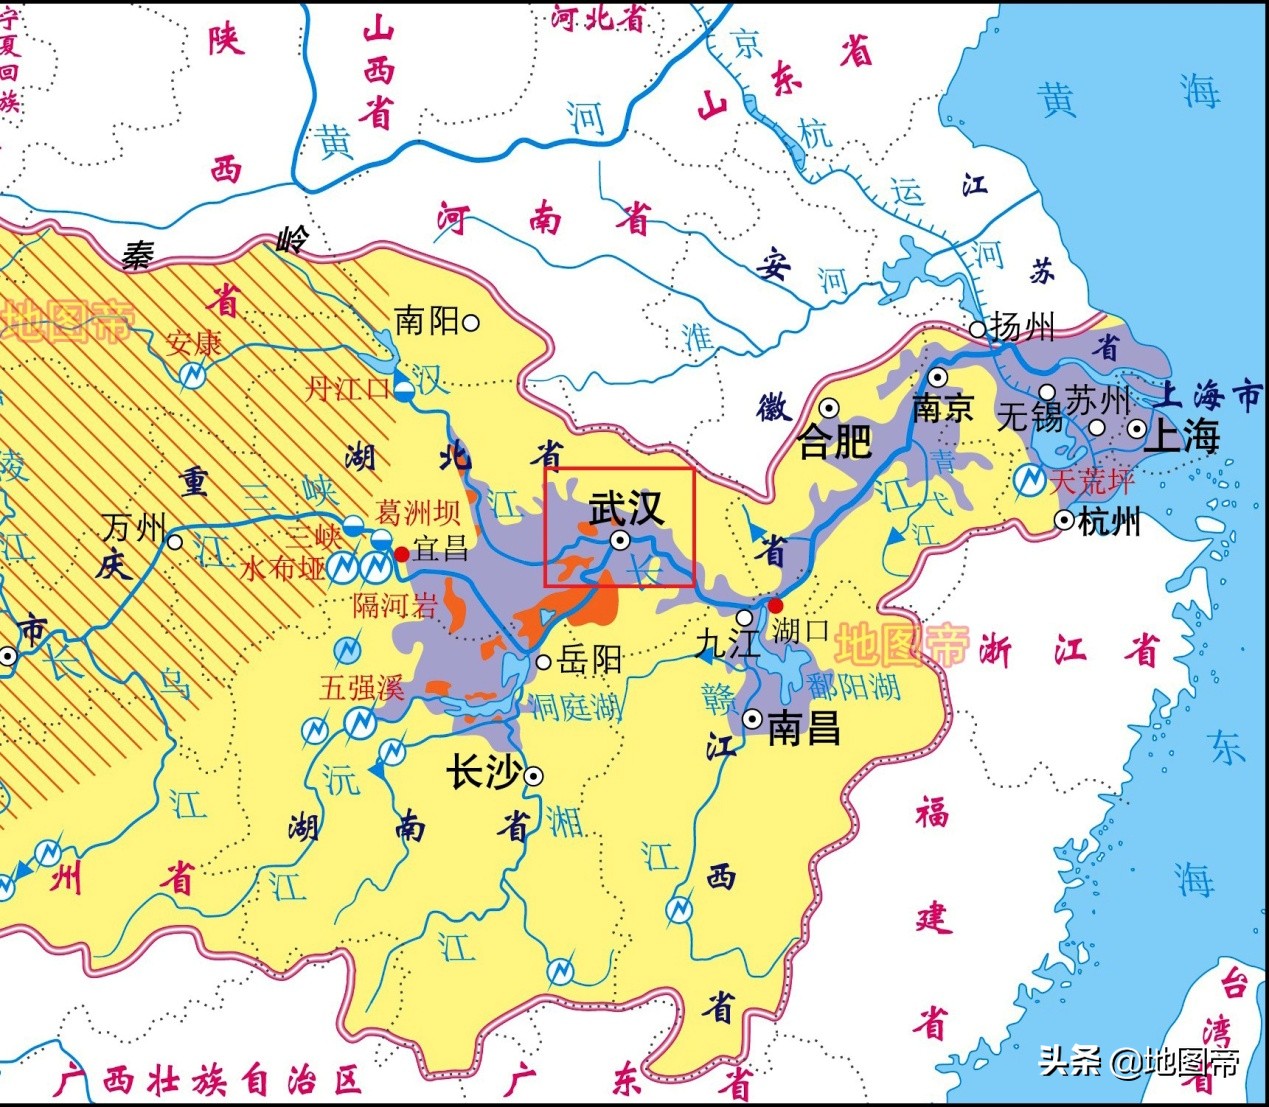 武汉有武昌区、汉阳区，为何没有汉口区？